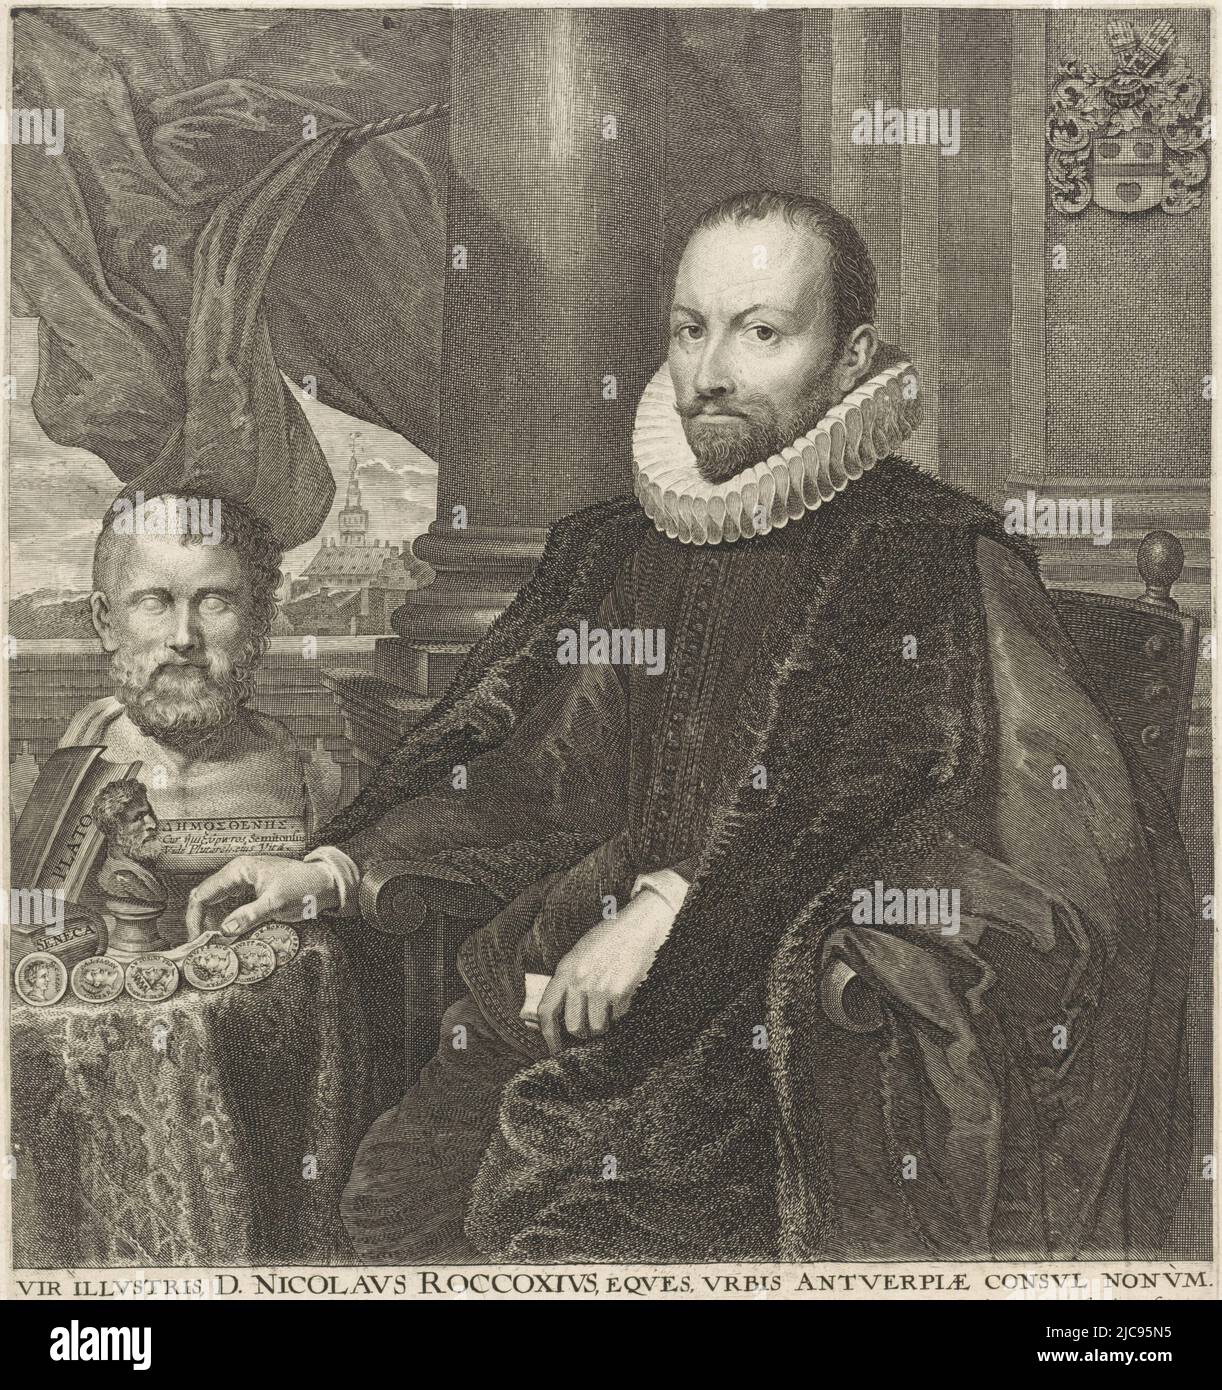 Ritratto di Nikolaas Rockox, sindaco di Anversa e amante dell'arte. Egli è seduto in un interno con libri e oggetti d'arte sul tavolo davanti a lui, tra cui un busto dell'oratore greco e politico Demostene. Ritratto di Nikolaas Rockox, tipografia: Lucas Vorsterman (i), (menzionato sull'oggetto), dopo: Anthony van Dyck, (menzionato sull'oggetto), Jean Gaspard Gevartius, (menzionato sull'oggetto), 1625 - 1666, carta, incisione, h 316 mm x l 267 mm Foto Stock